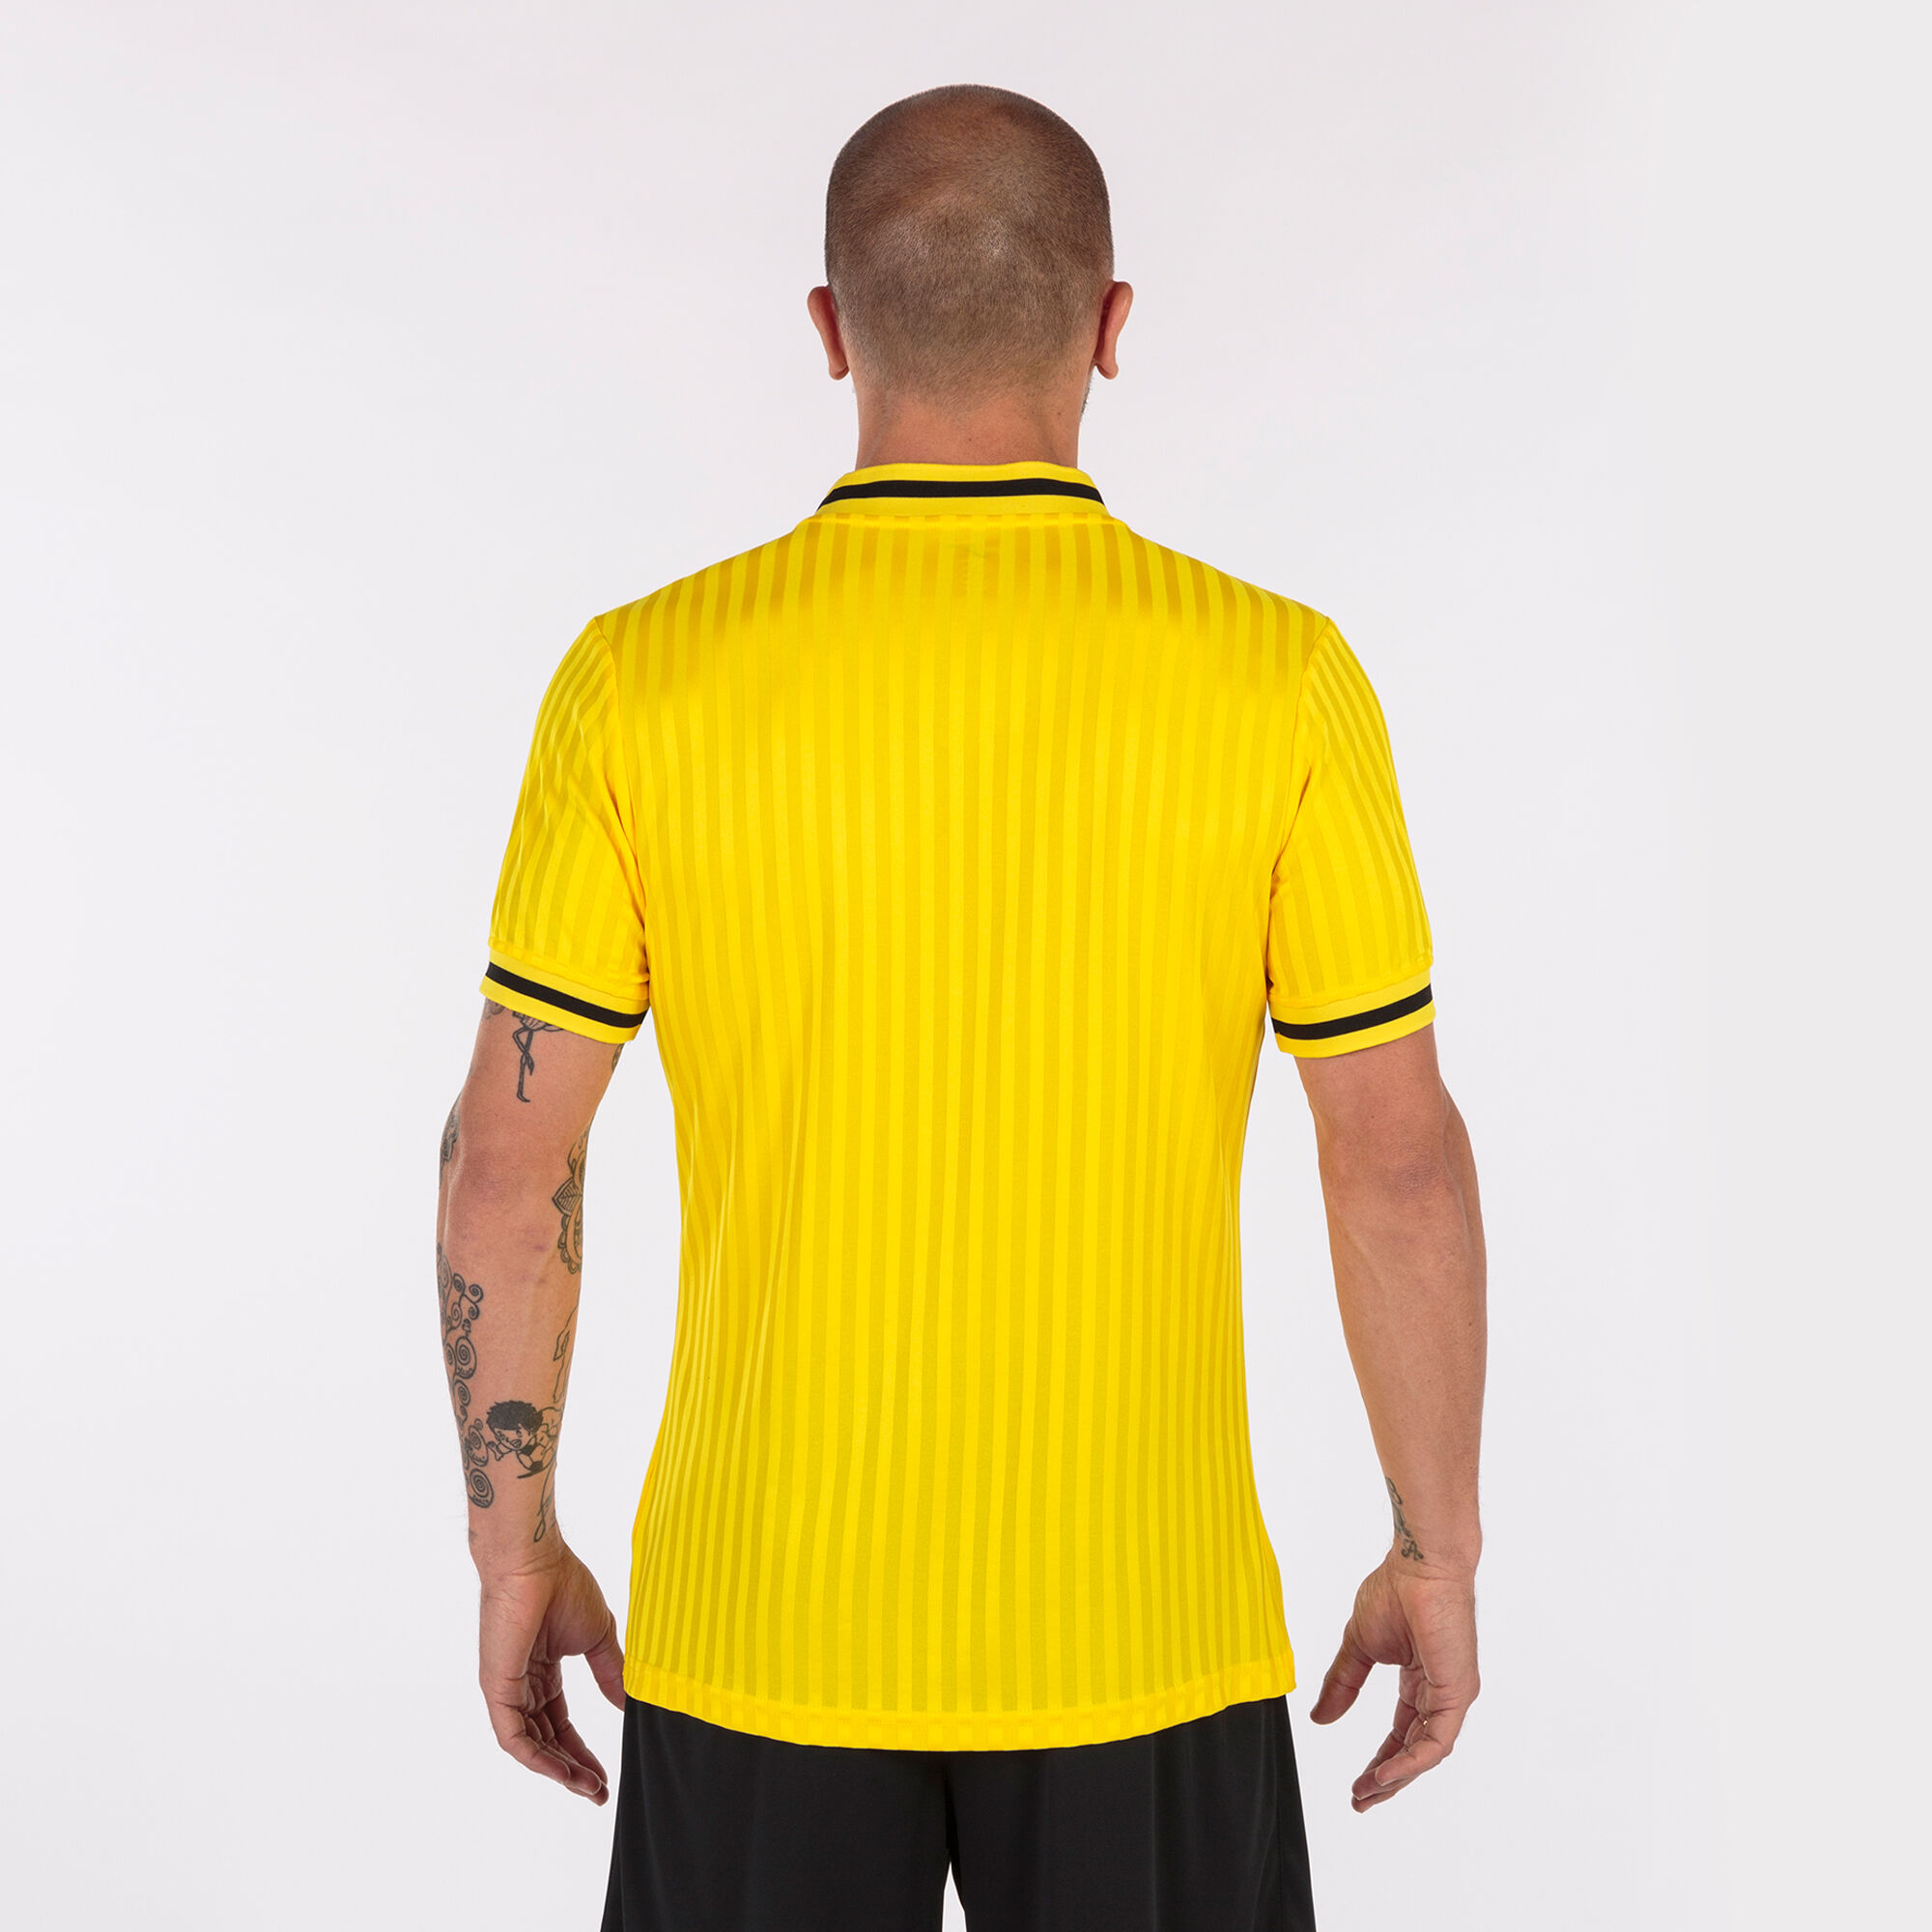 Camiseta manga corta hombre Toletum III amarillo